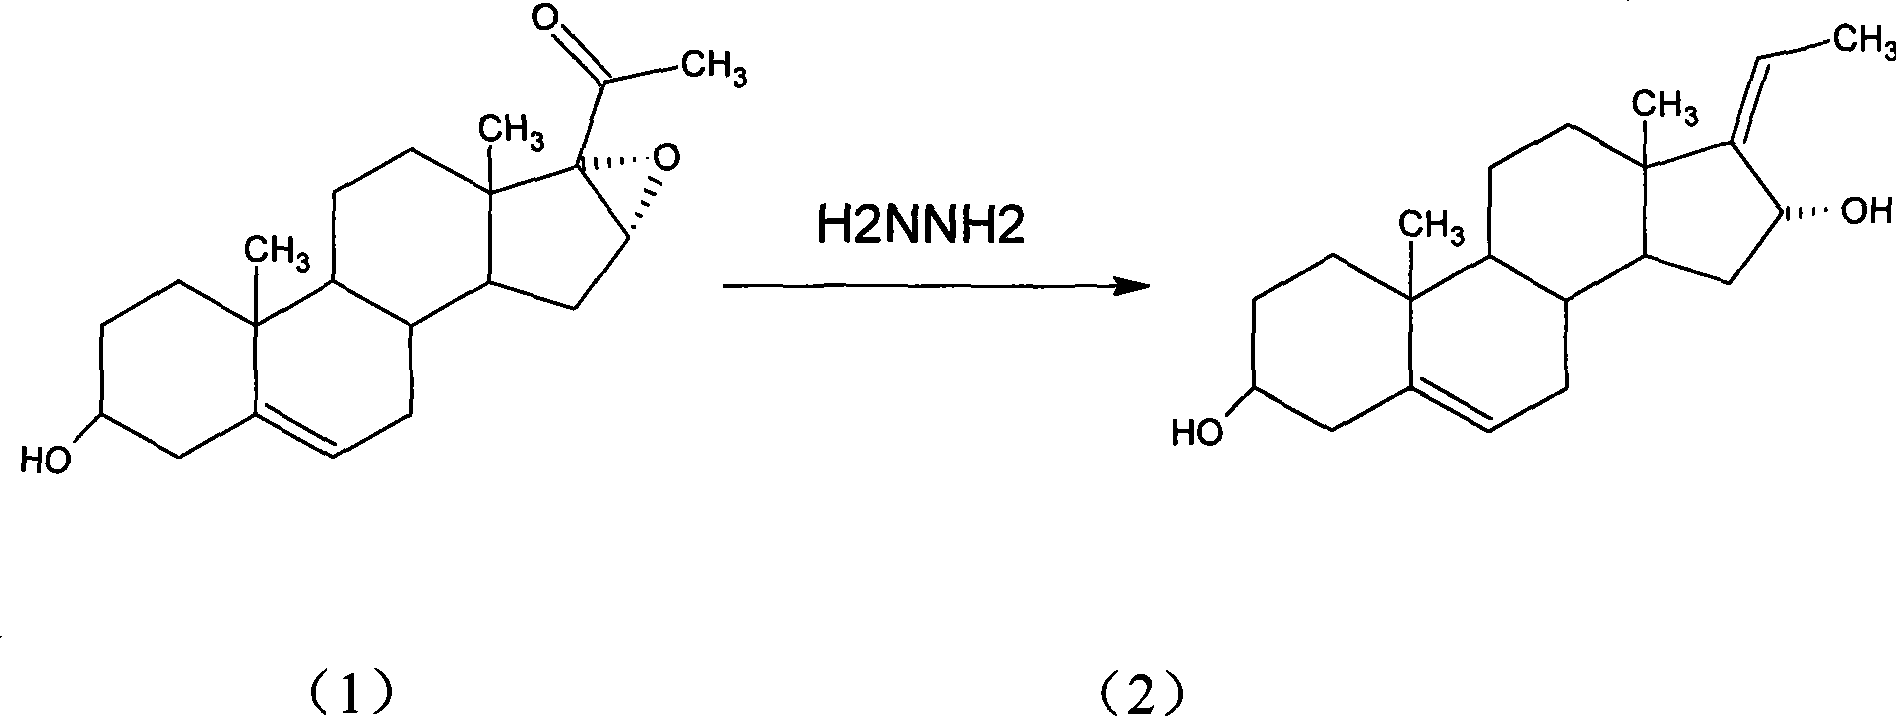 Method for producing diene sterone